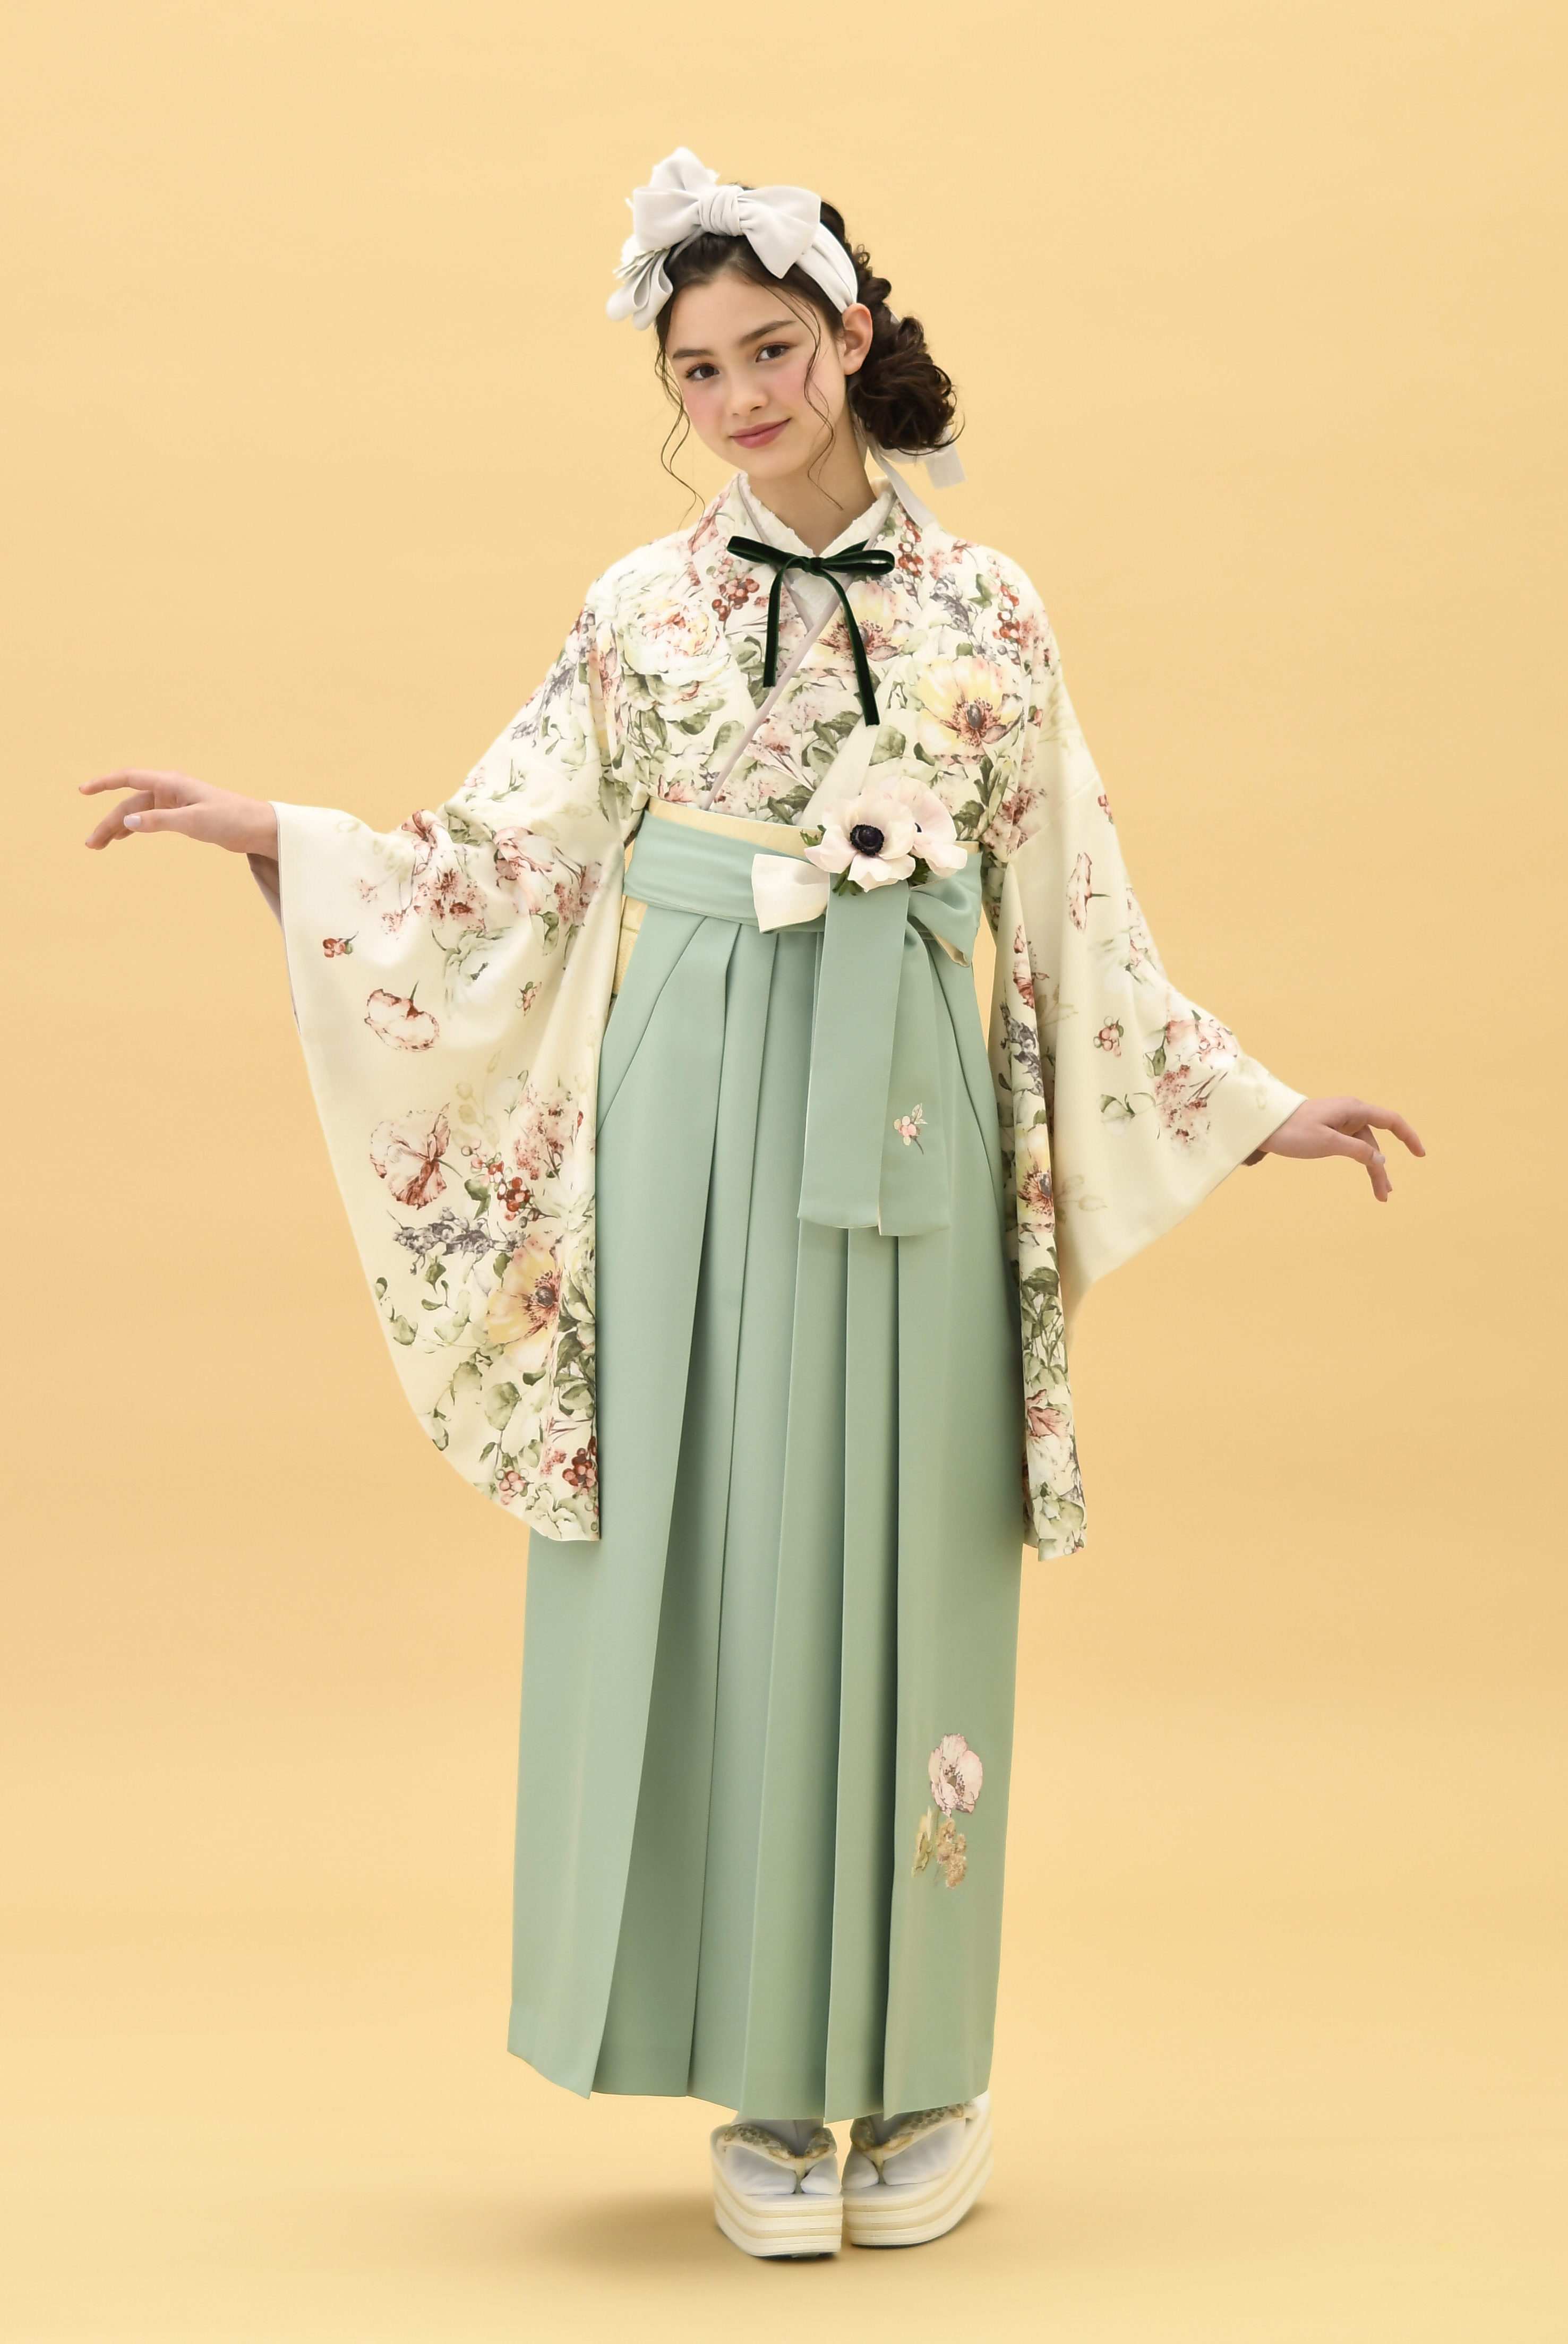 SUGAR KEIブランドの、クリーム地に淡いピンクの花柄の二尺袖と、ミントグリーンの袴の女性用卒業式袴を着用した全身写真